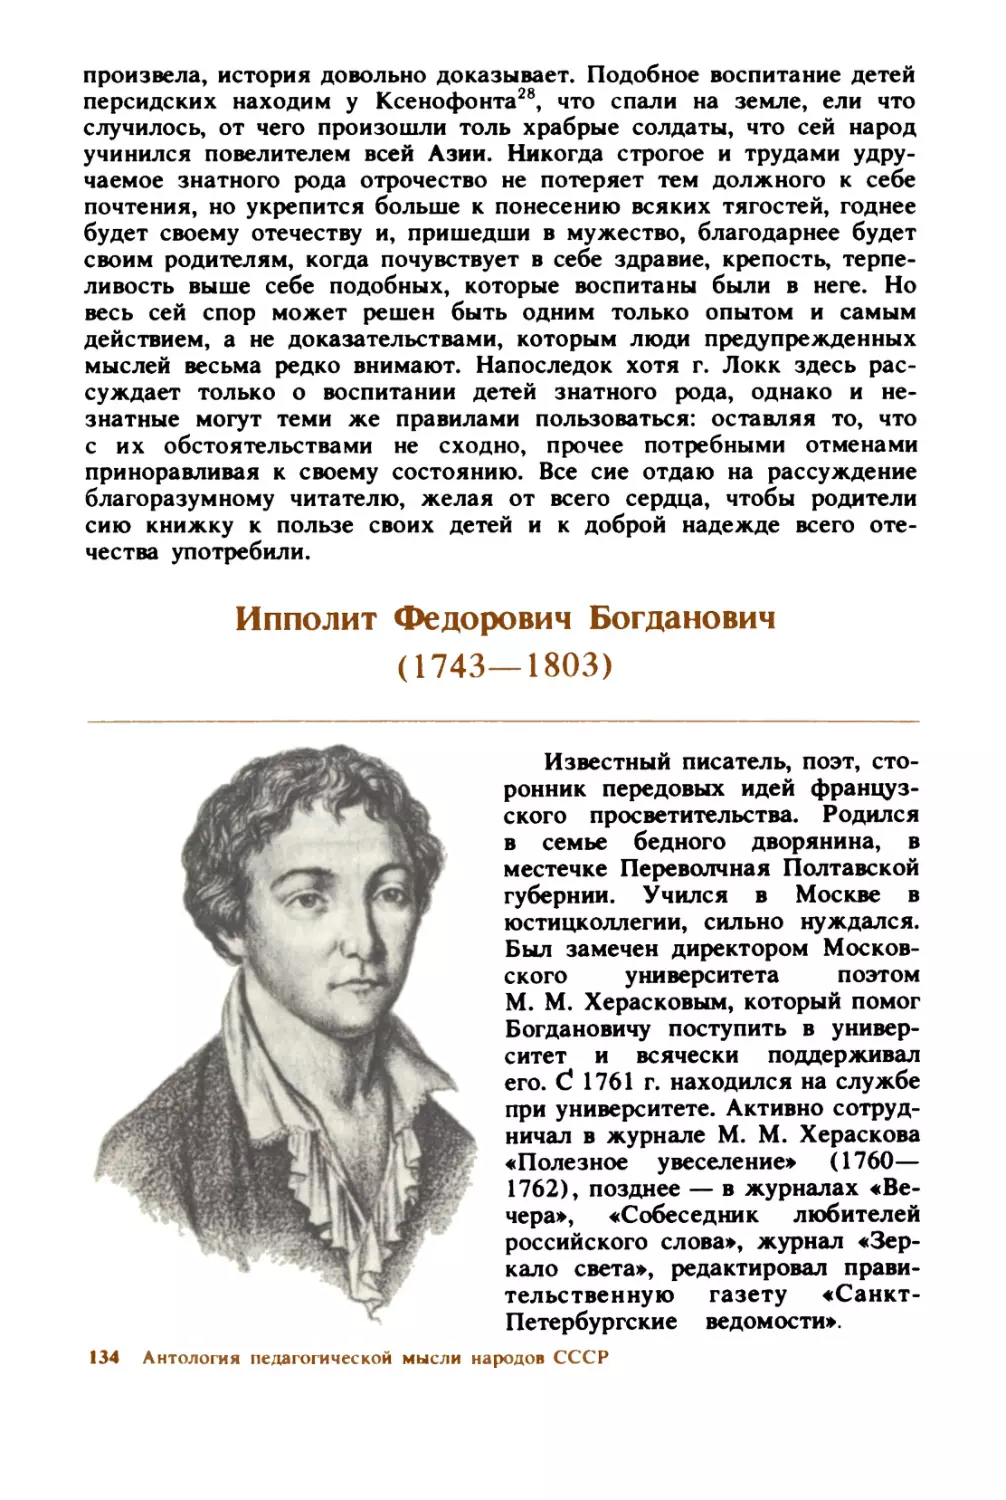 Ипполит  Фёдорович  Богданович